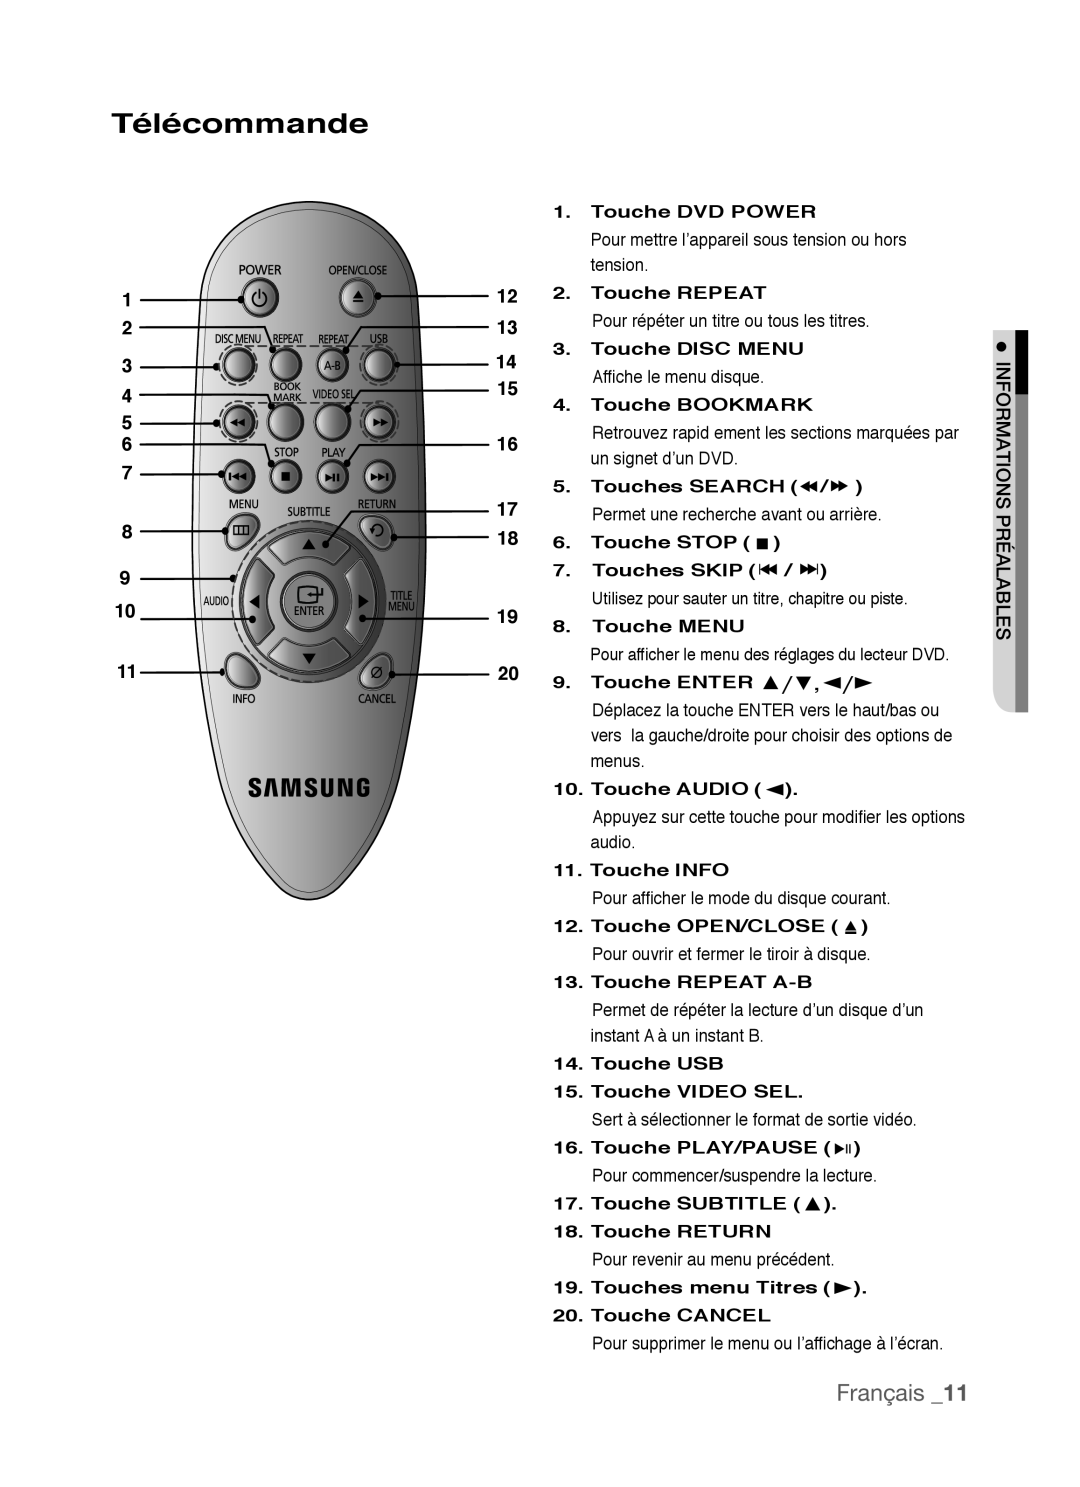 Samsung AK68-01770G Télécommande, Français, Touche DVD POWER, Touche REPEAT, Touches SEARCH, Touche STOP, Touches SKIP 